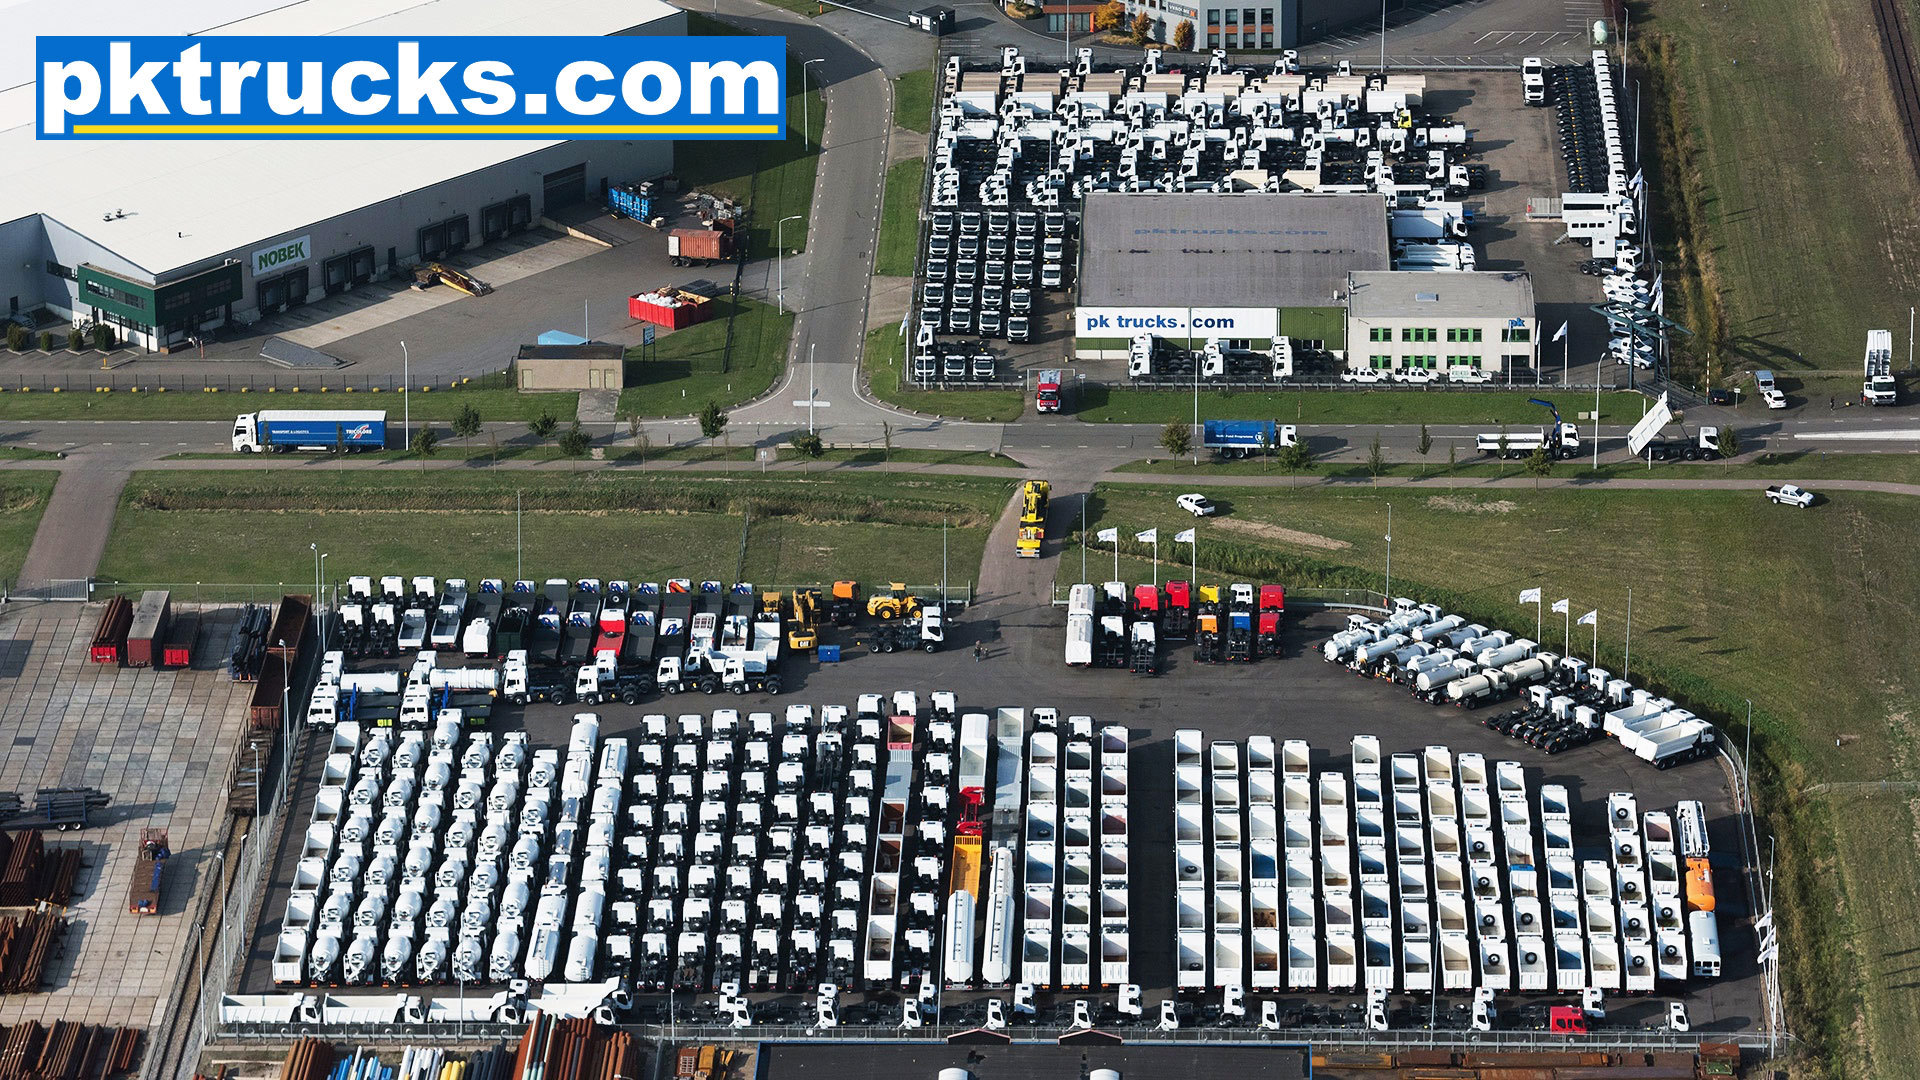 Pk trucks holland undefined: 1 kép.